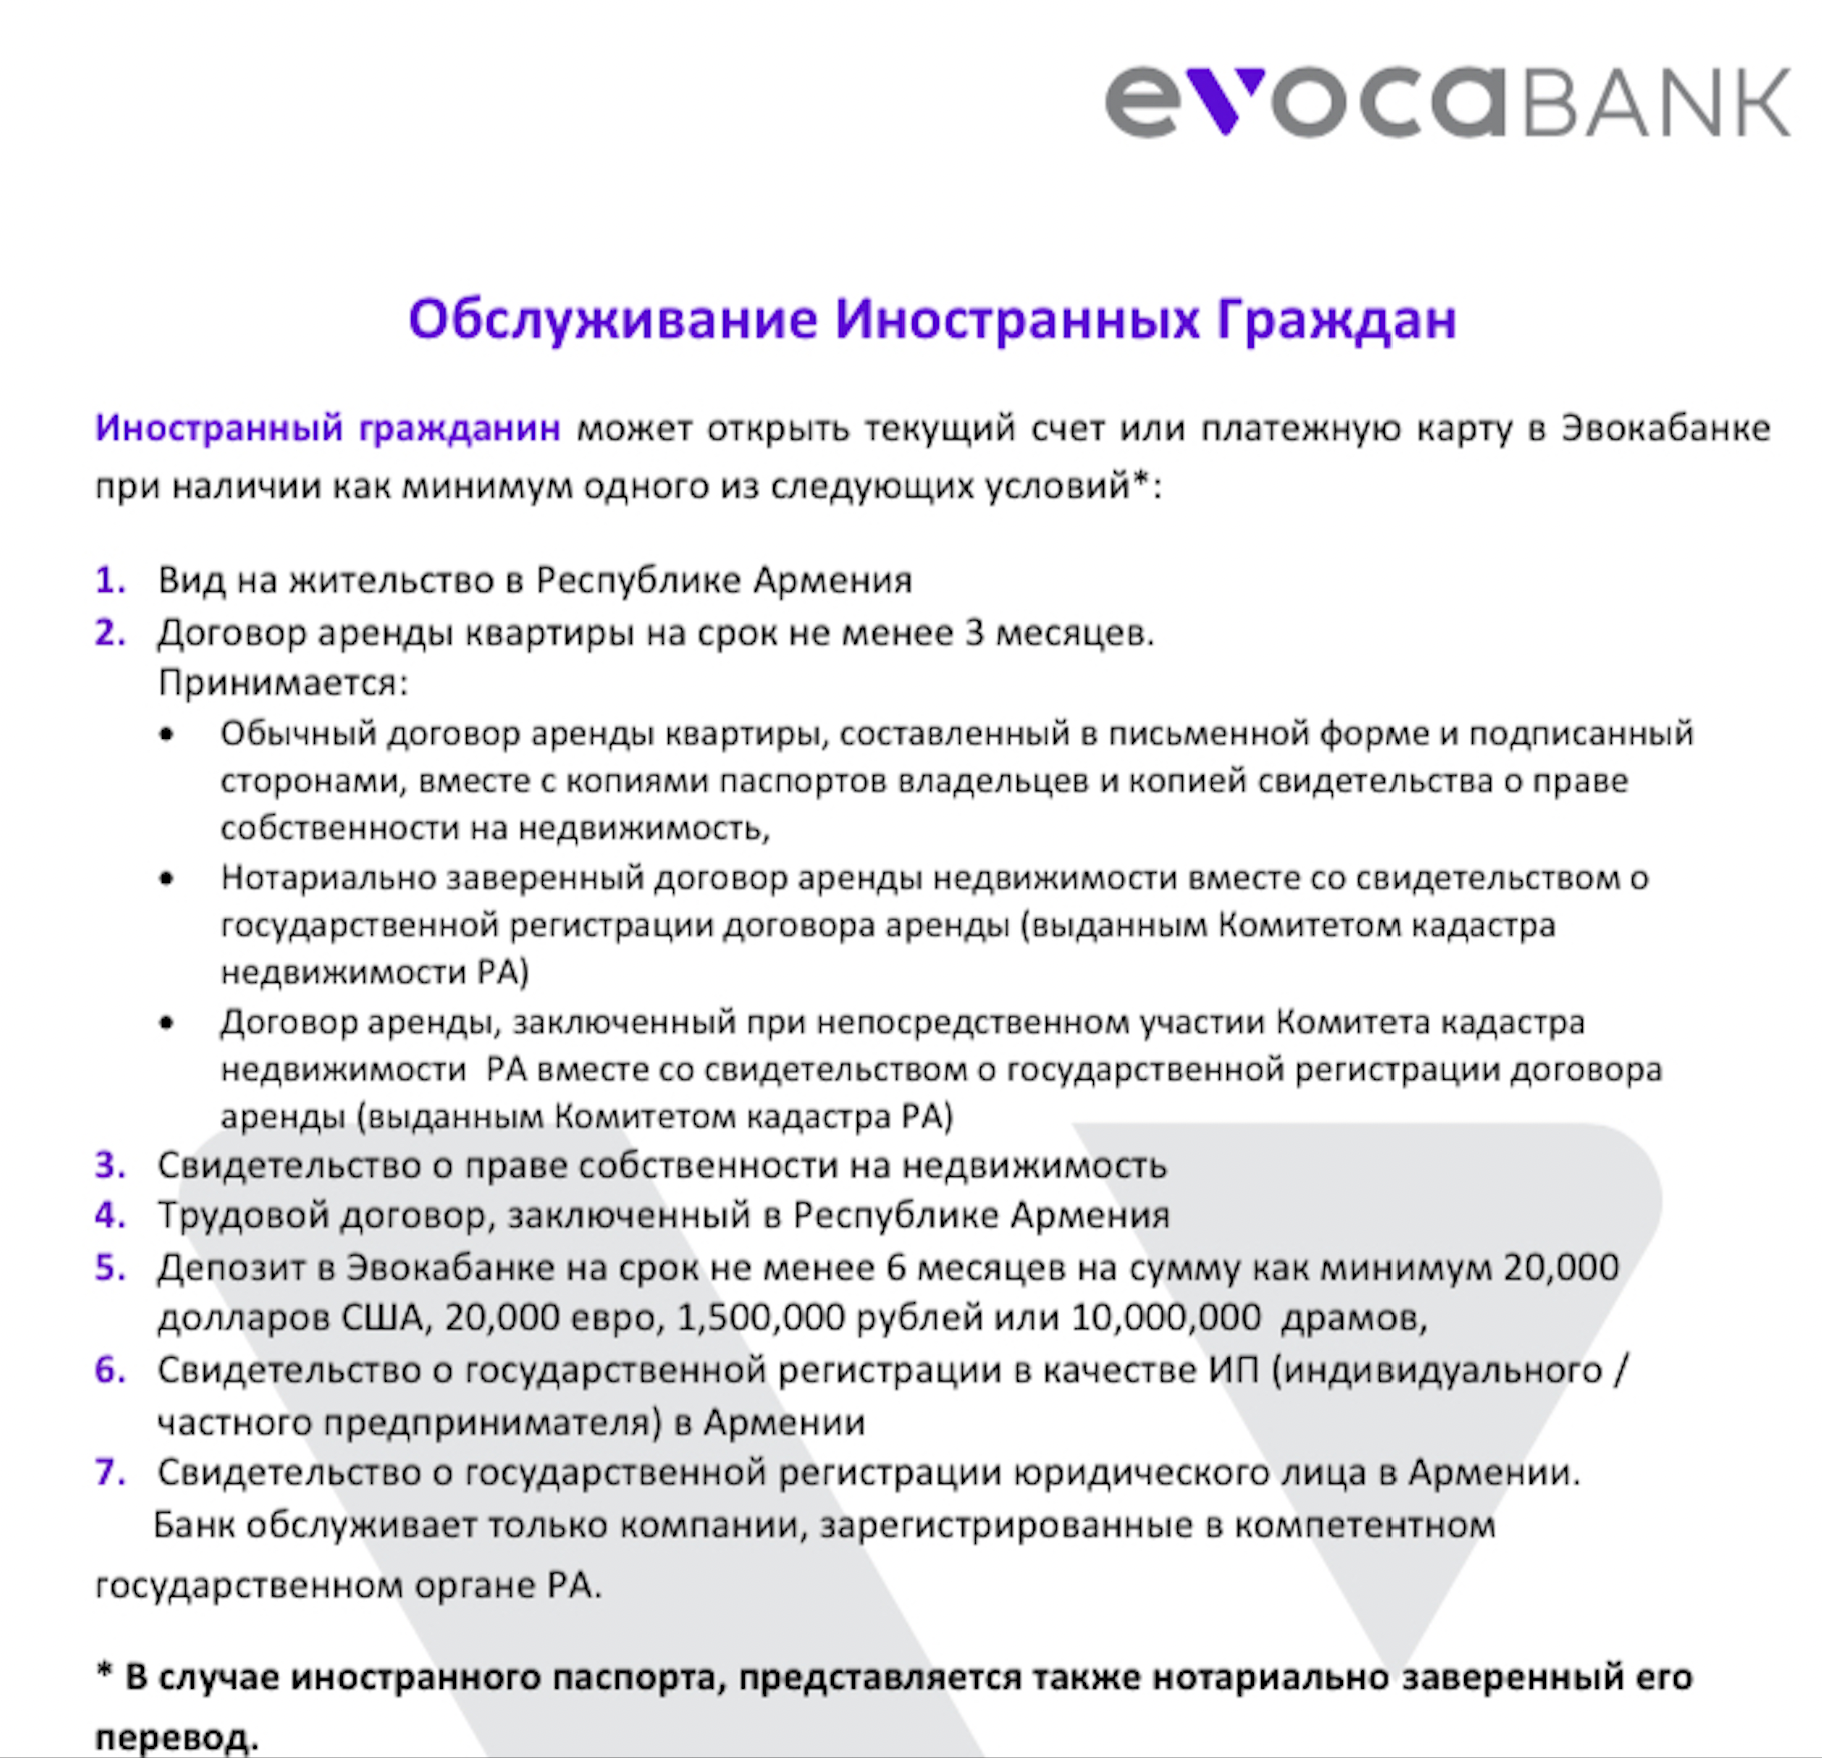 Требования для открытия карты в Evocabank